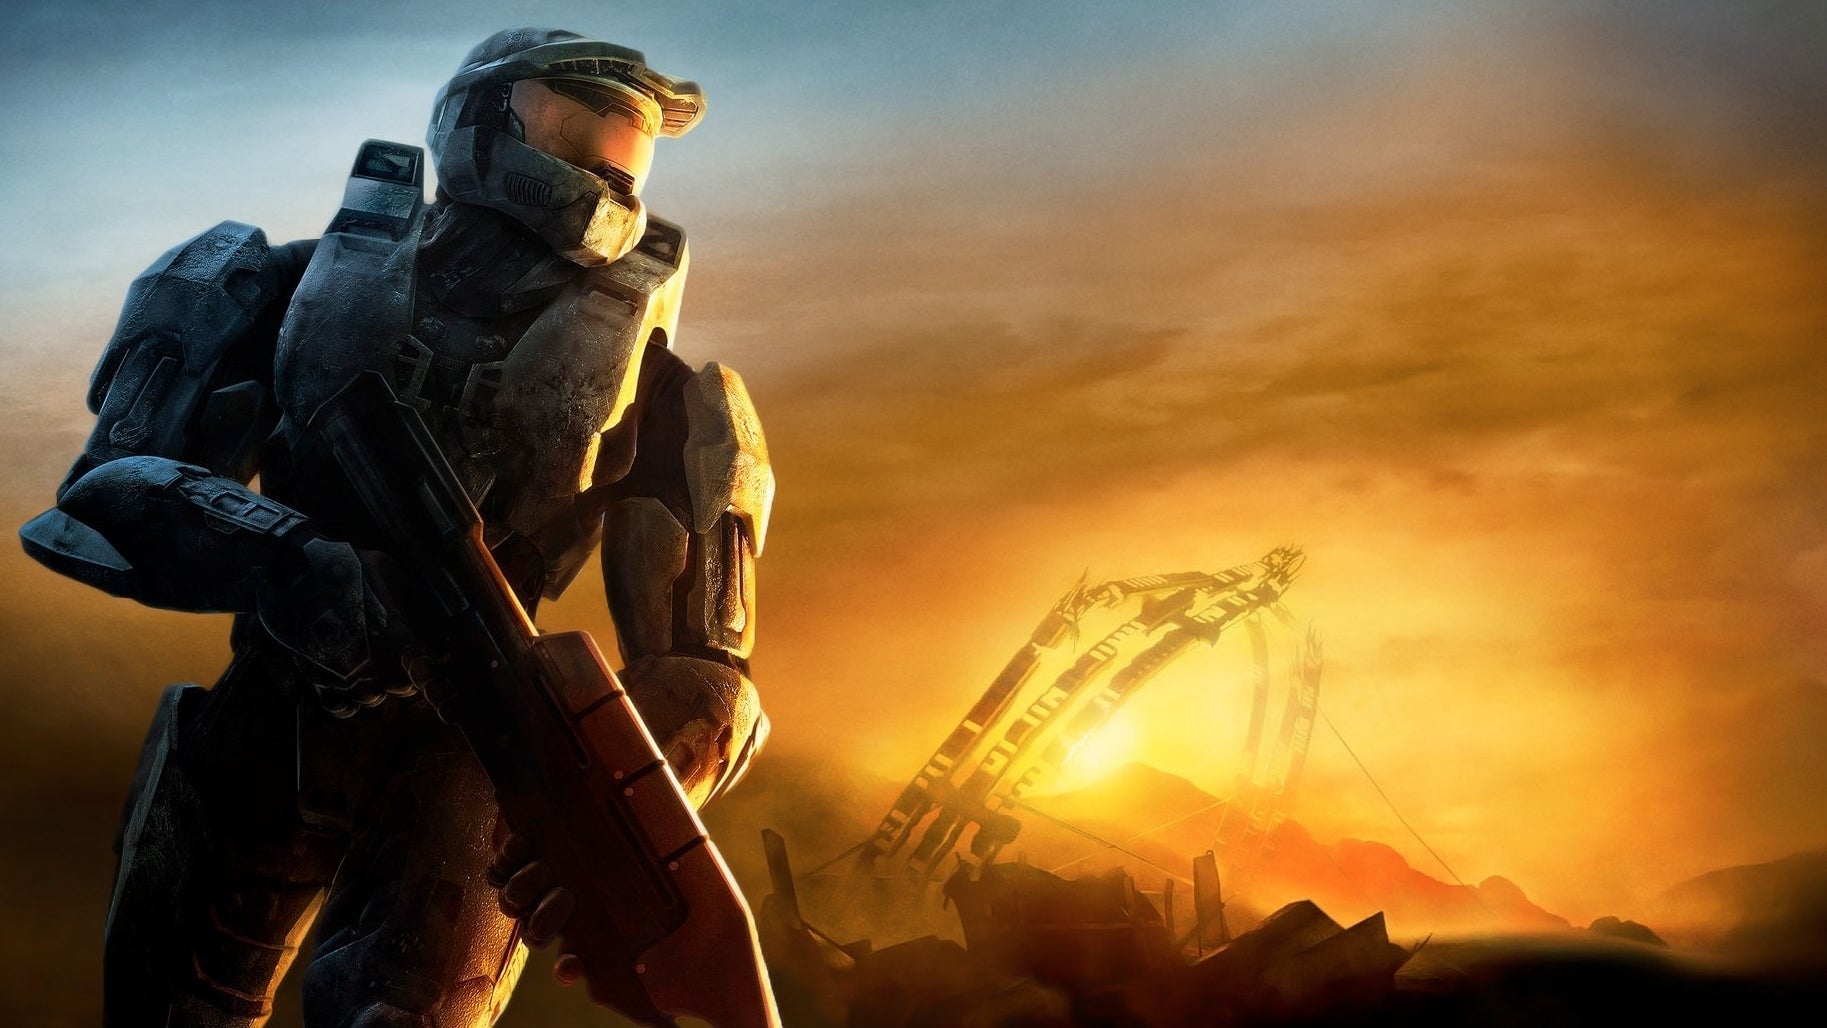 Immagine di Halo 3 su PC disponibile prima del previsto, ecco i dettagli dell'aggiornamento